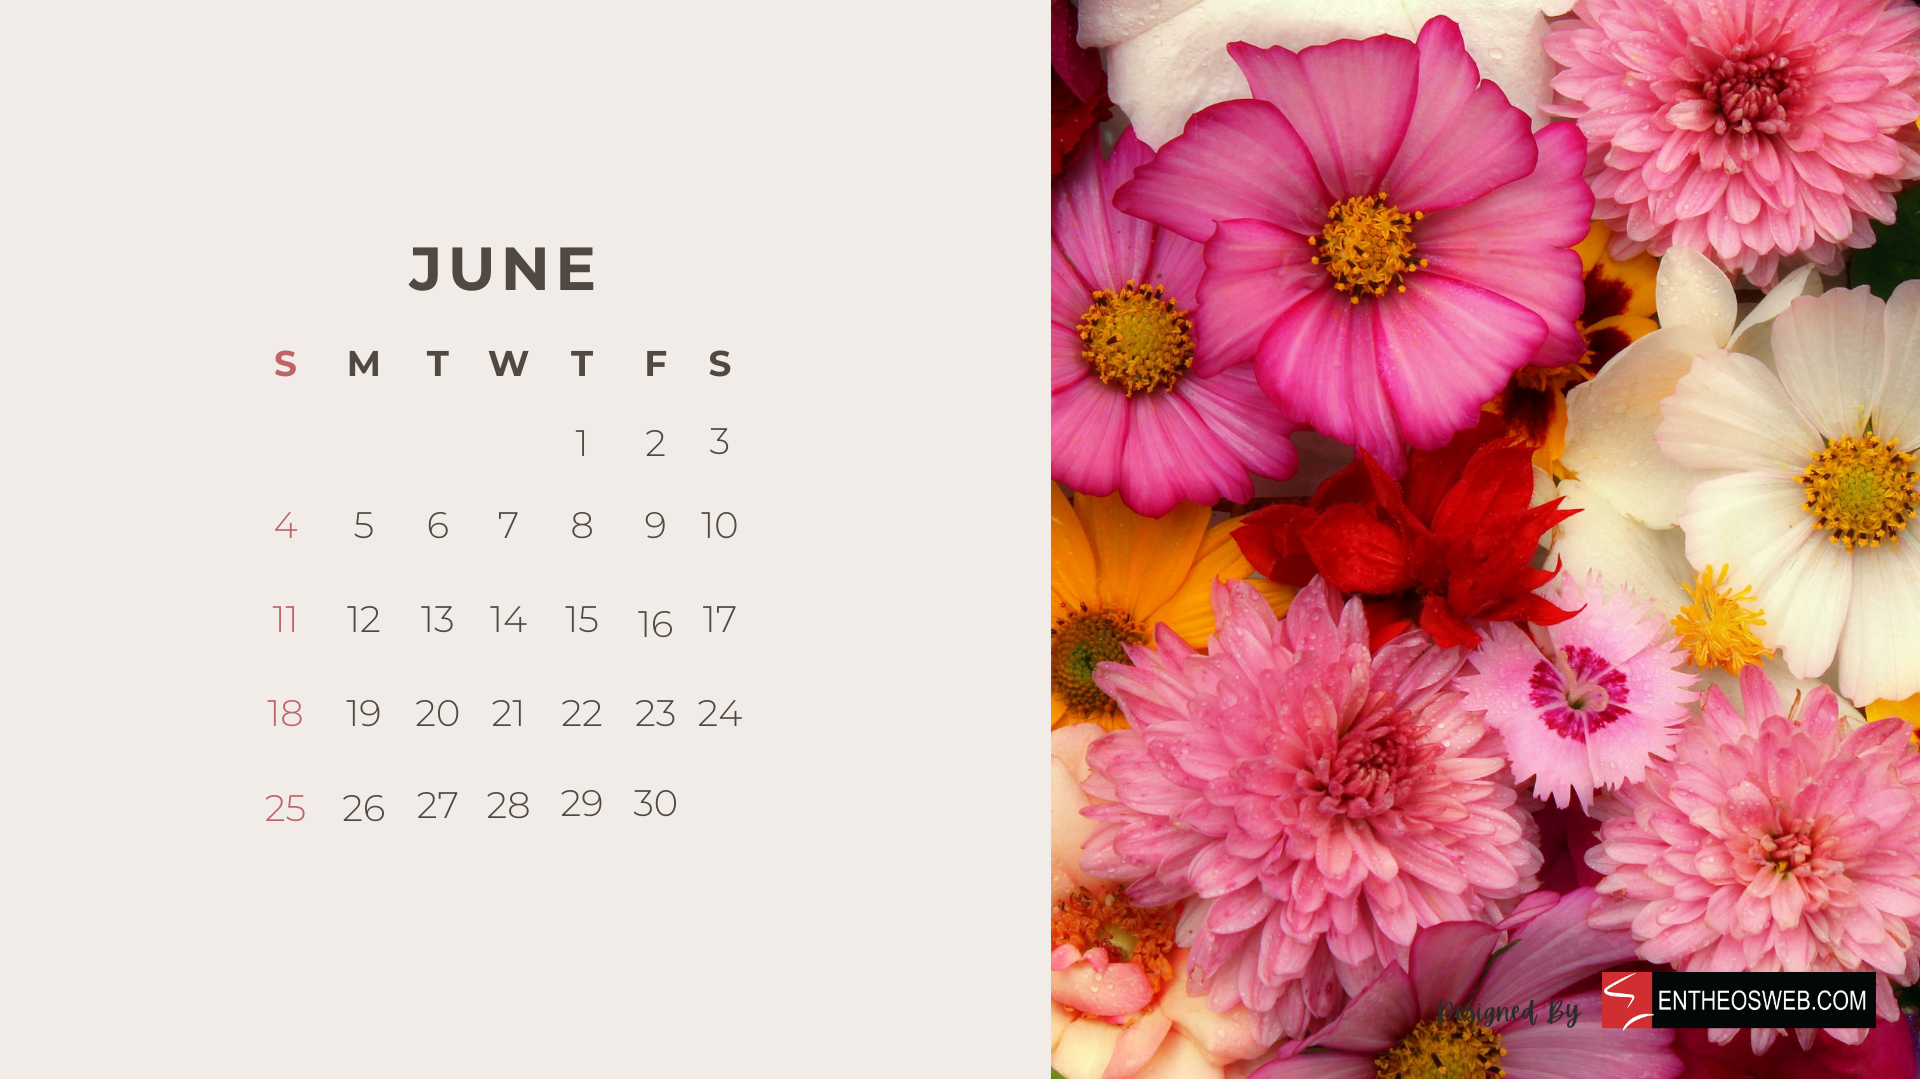 June 2023 Calendar Desktop Wallpaper Background EntheosWeb